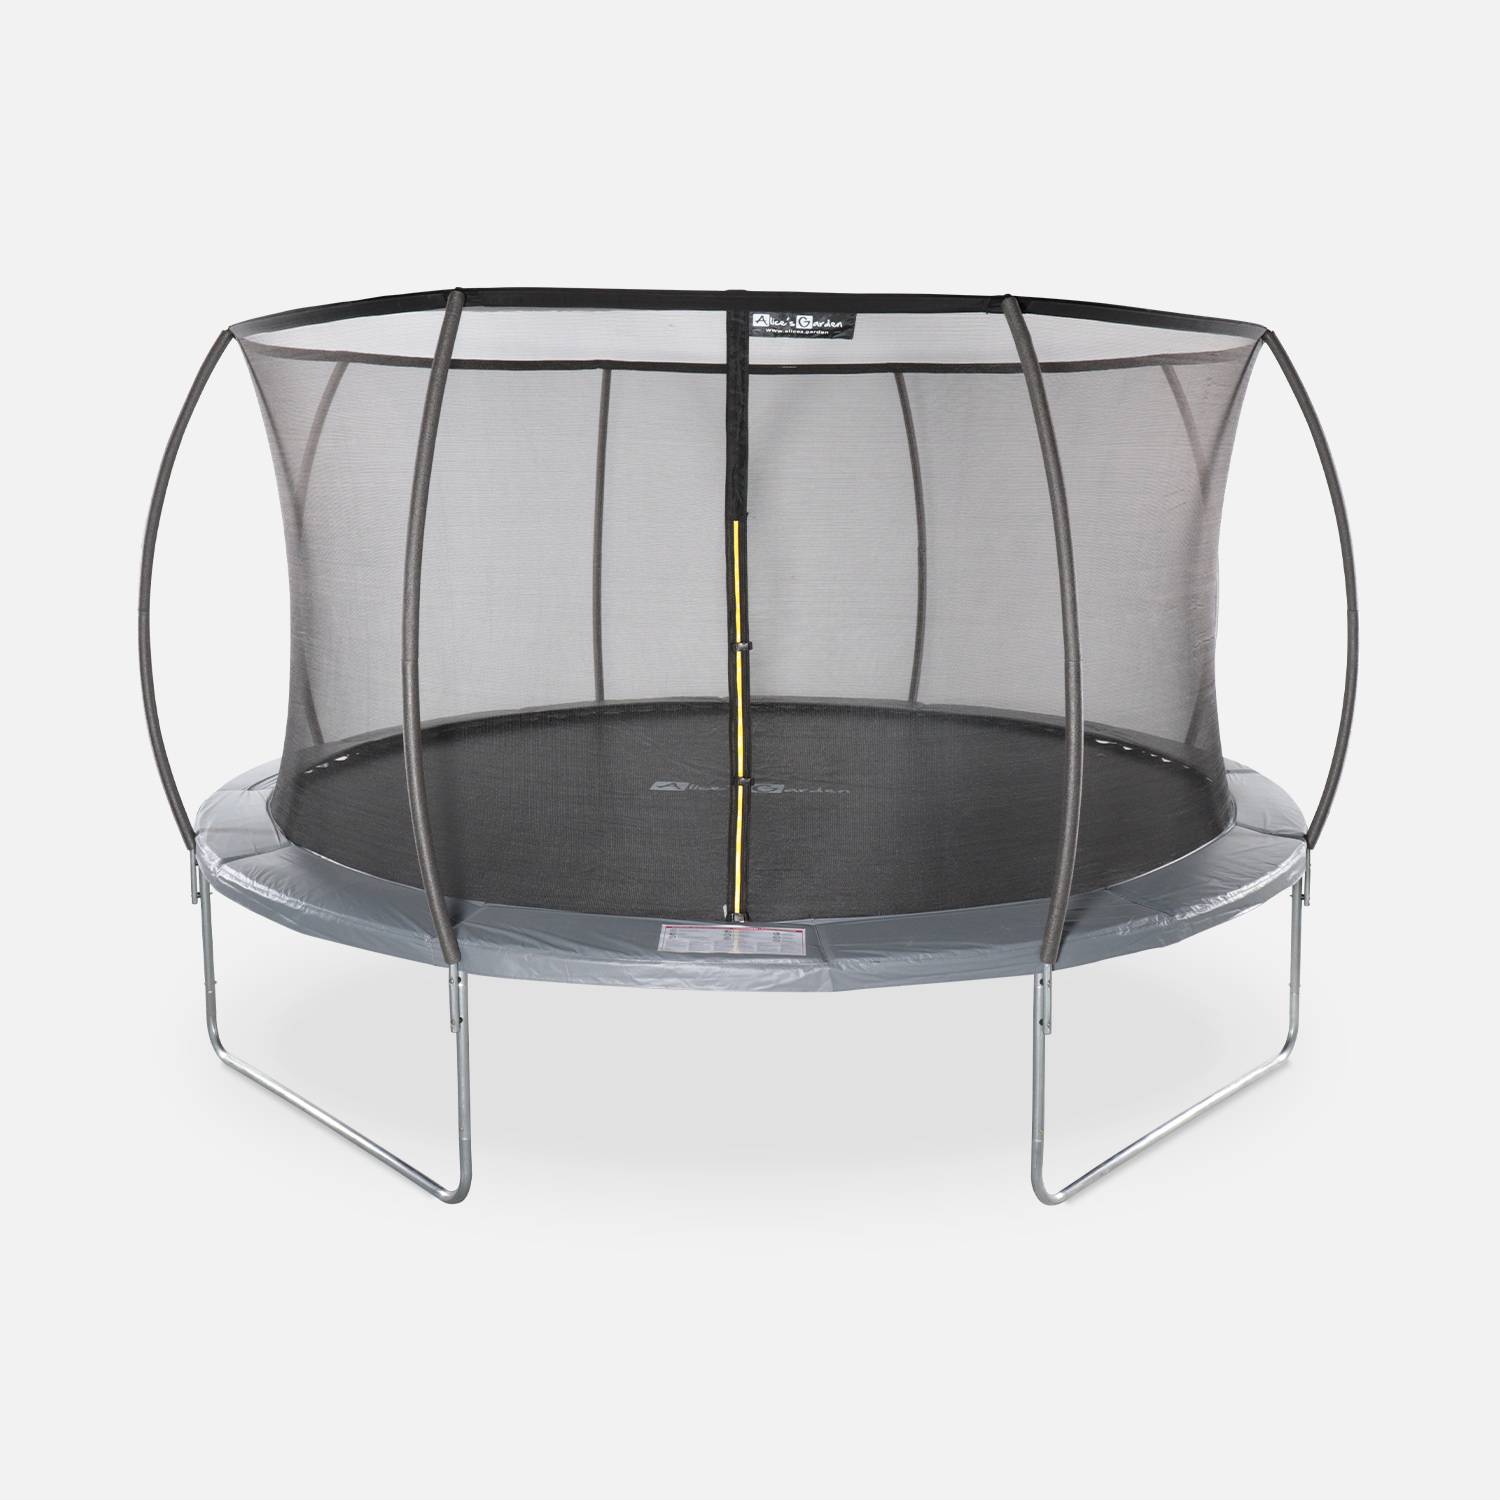 Trampoline rond Ø 430cm gris avec filet de protection intérieur - Venus Inner – Nouveau modèle - trampoline de jardin 4,30m 430 cm |Design | Qualité PRO. | Normes EU. Photo1